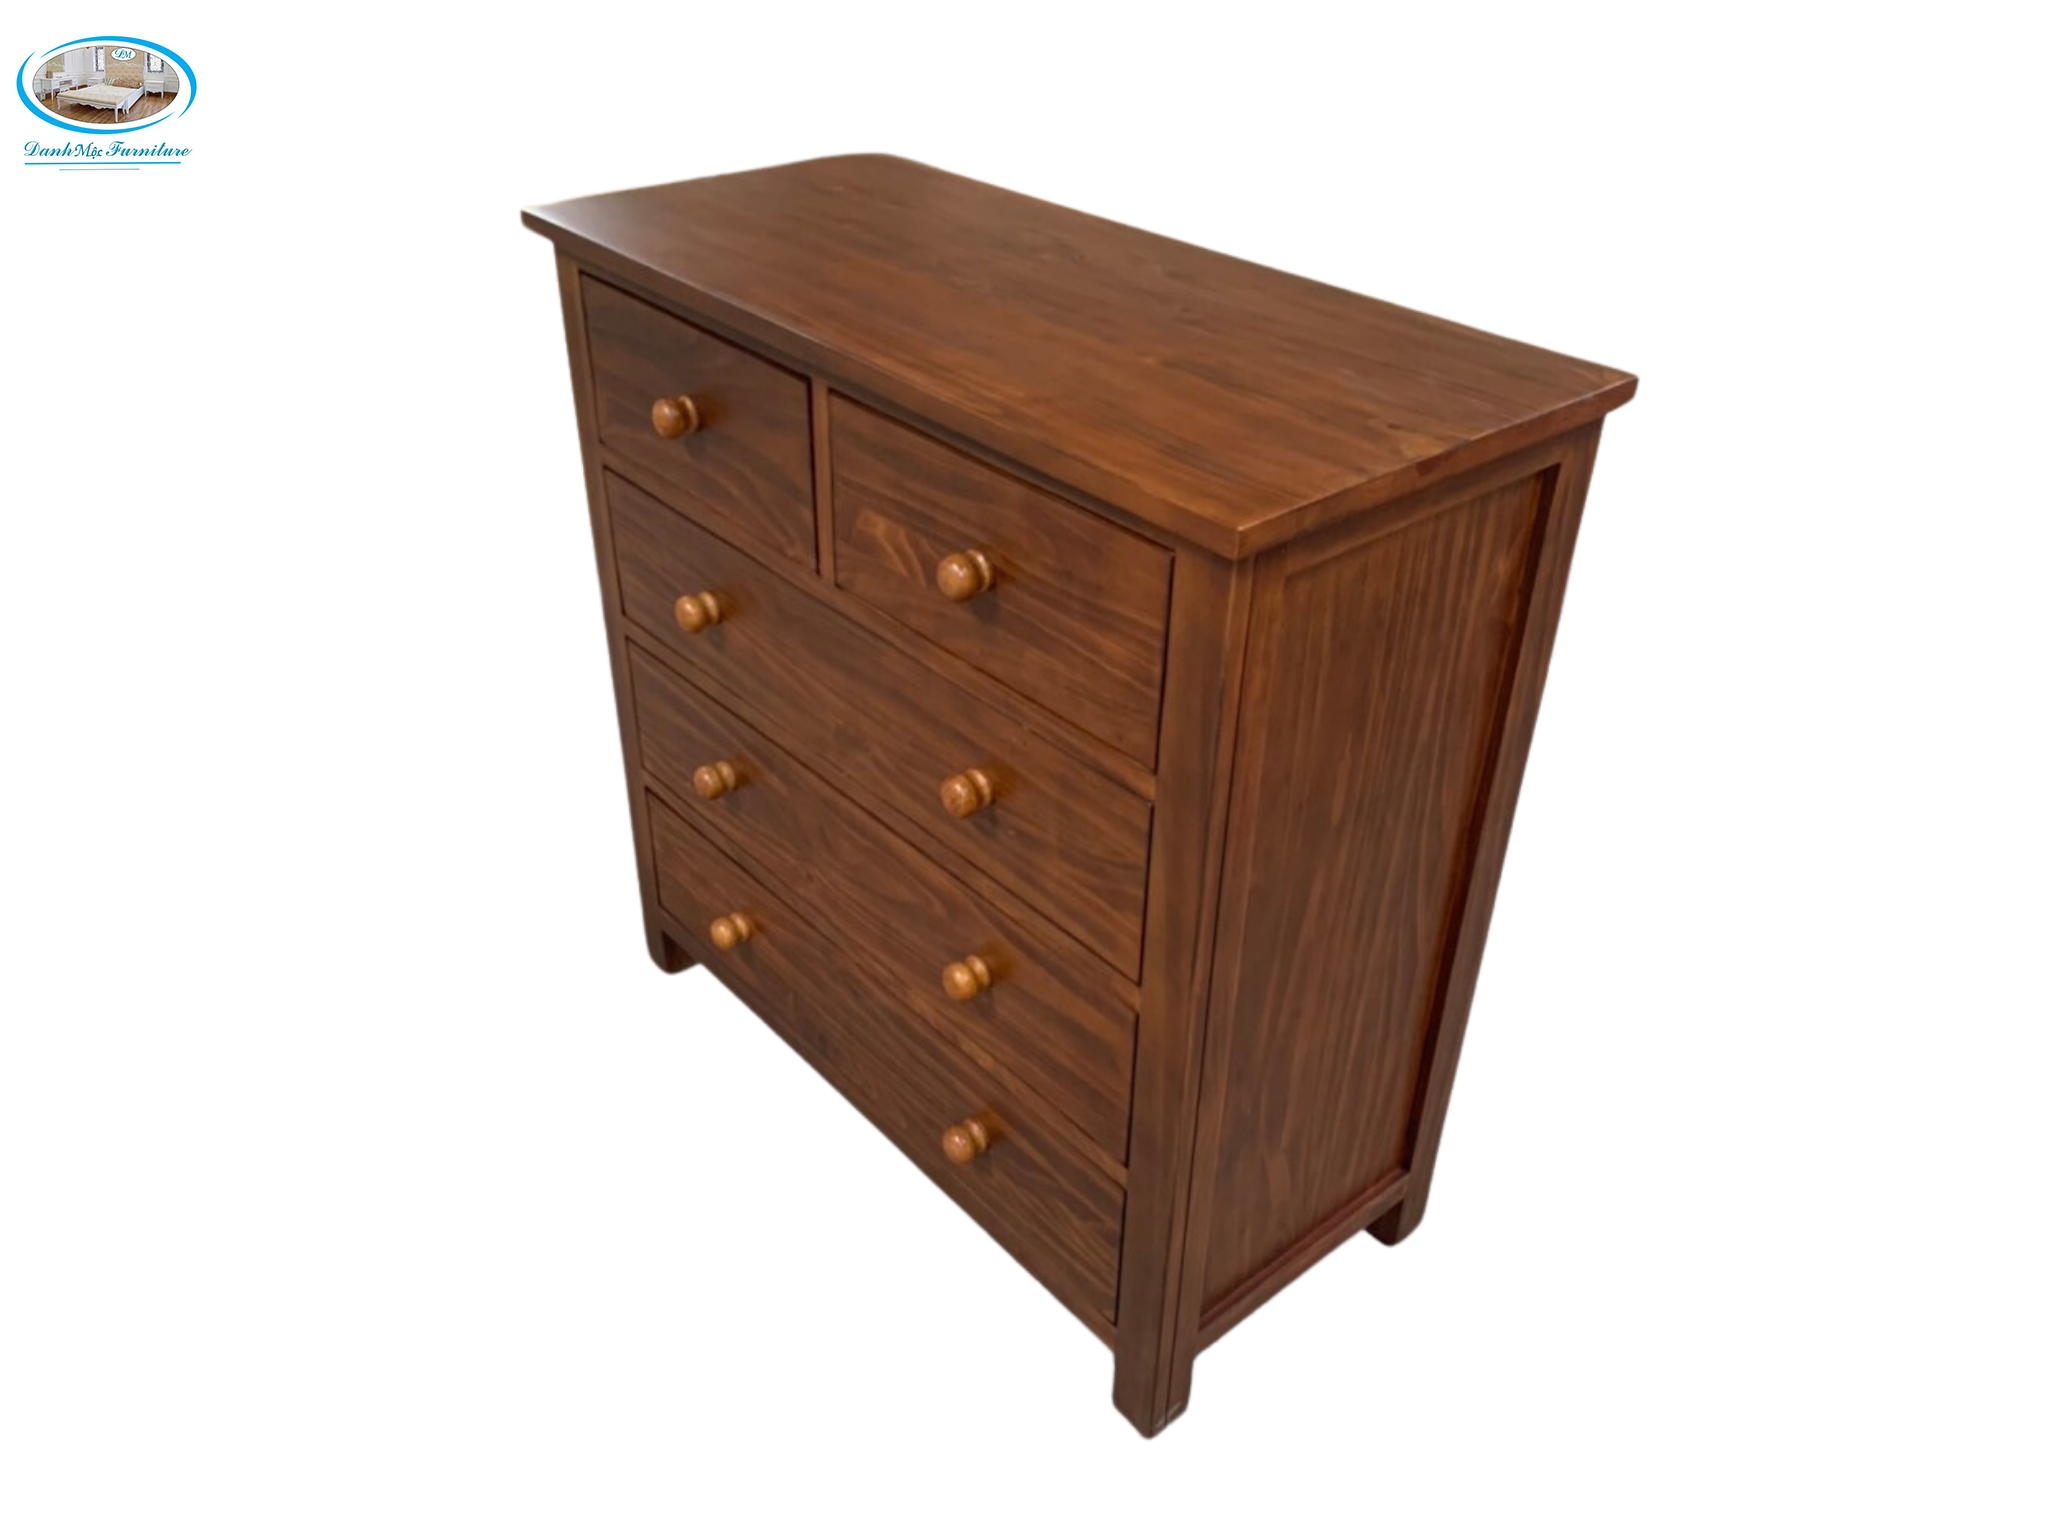 Tủ ngăn kéo - Tủ ngăn kéo gỗ tự nhiên - Tủ ngăn kéo gỗ - Chest of drawer - Nội thất Danh Mộc